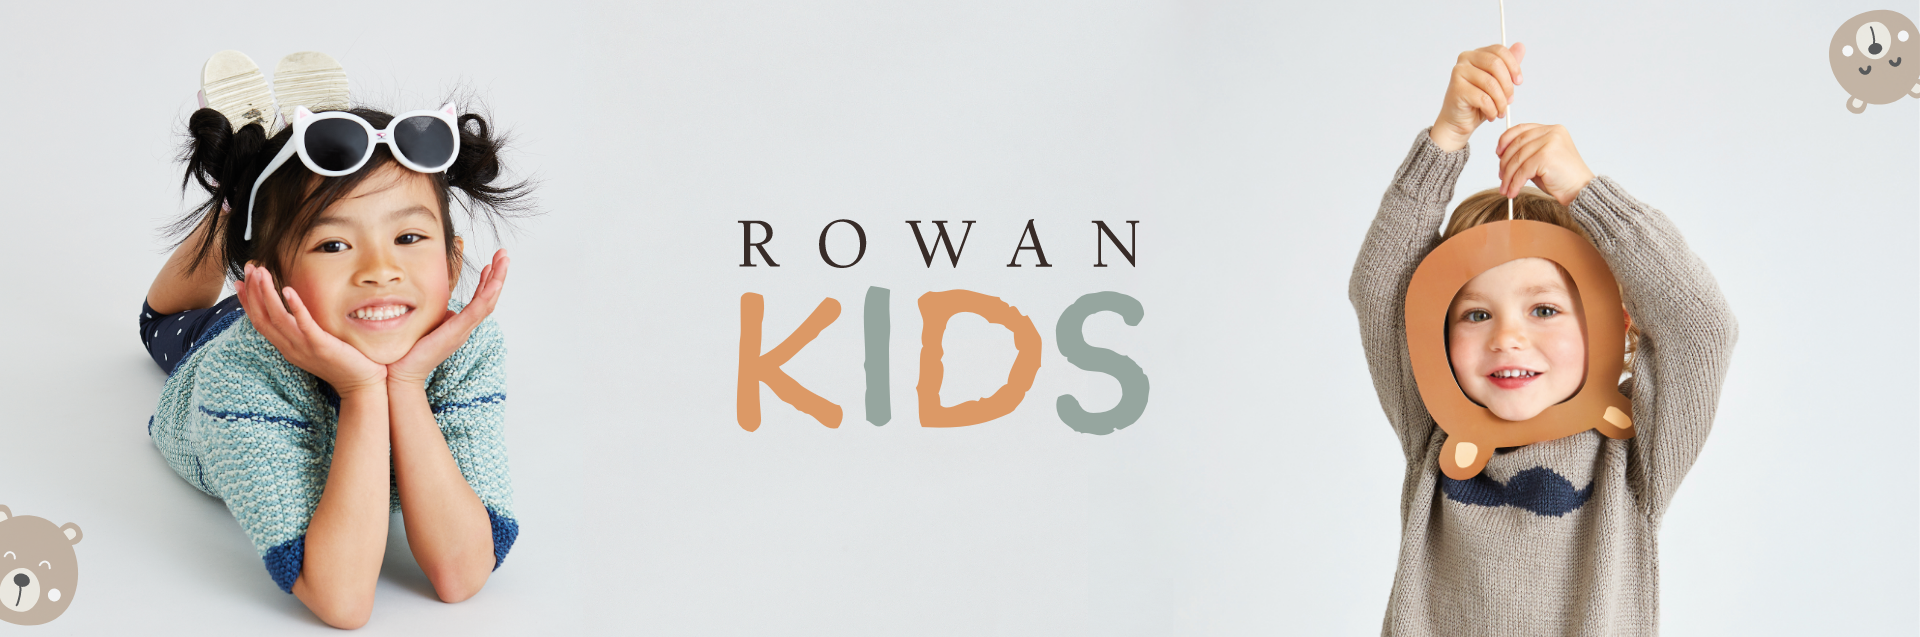 Rowan Kids Banner